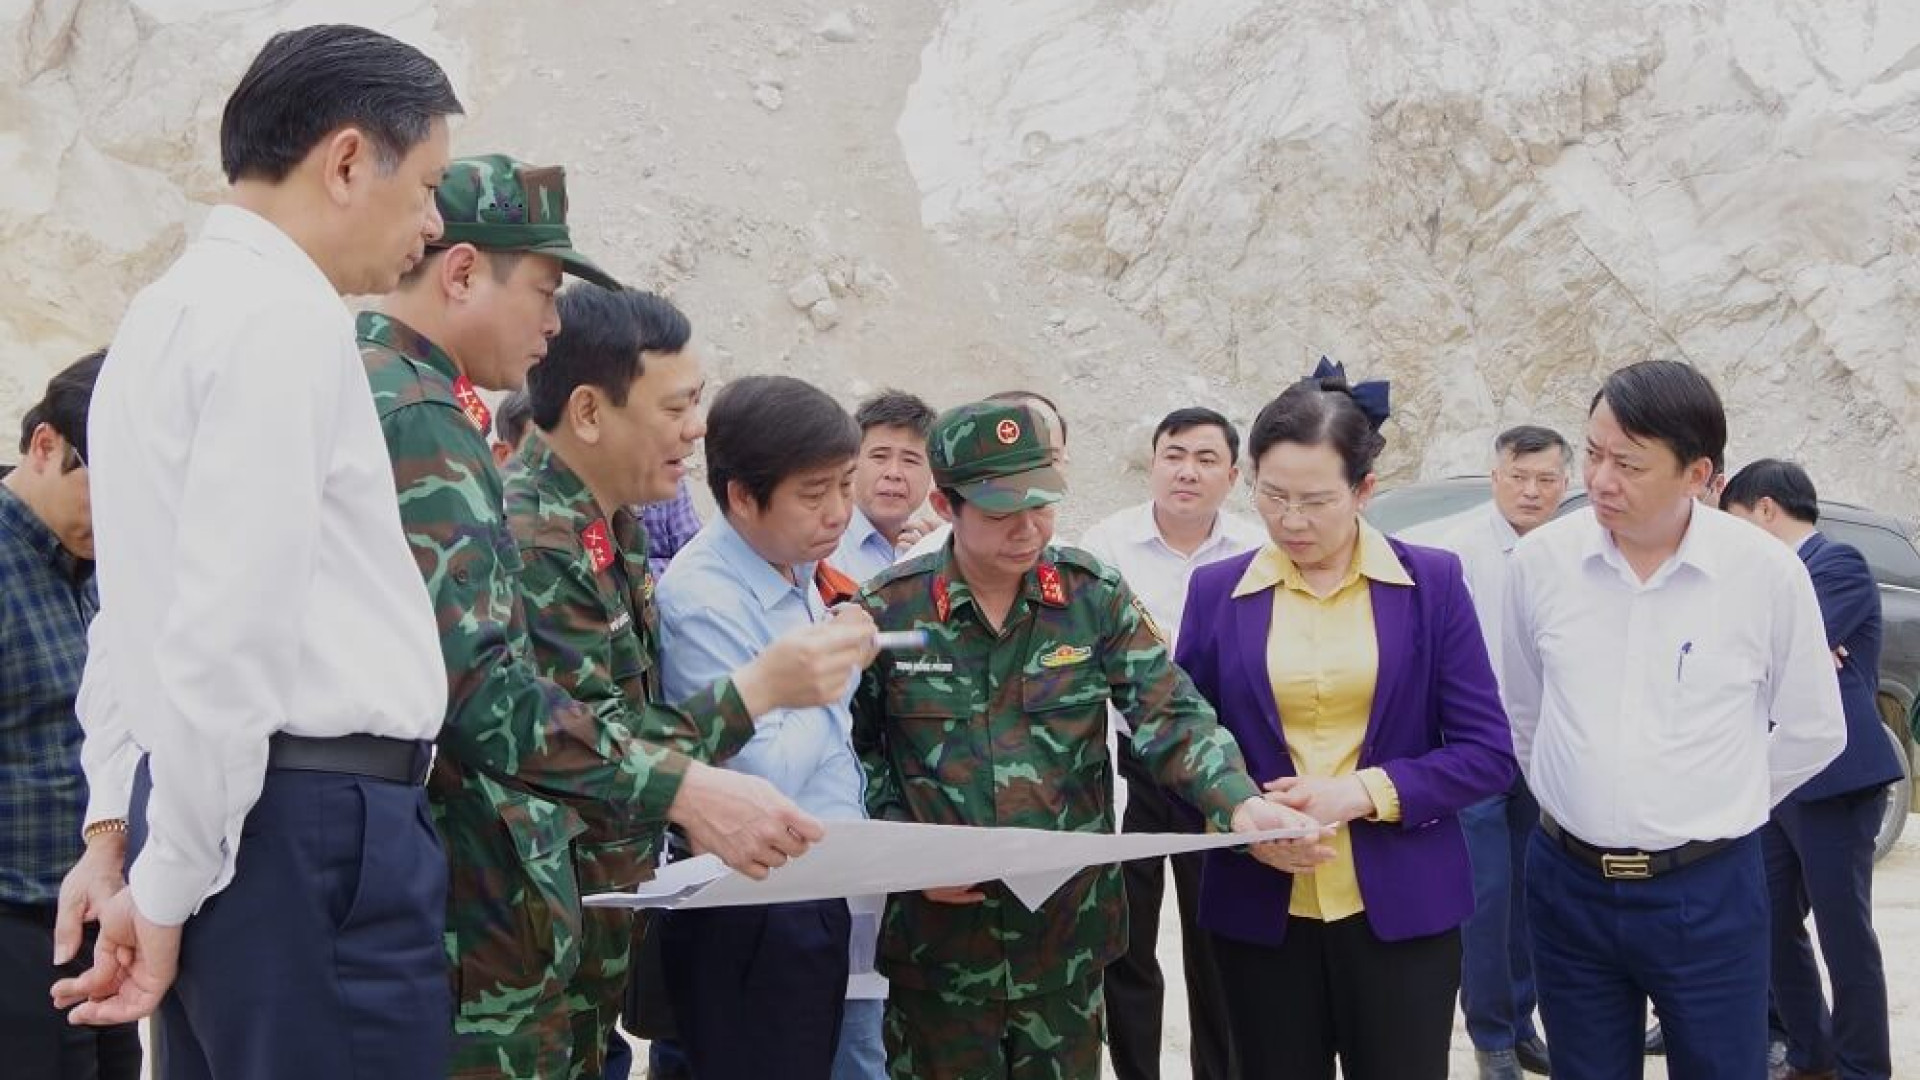 Bí thư Tỉnh ủy Hà Nam kiểm tra tiến độ thực hiện các dự án công trình quân sự tại huyện Kim Bảng